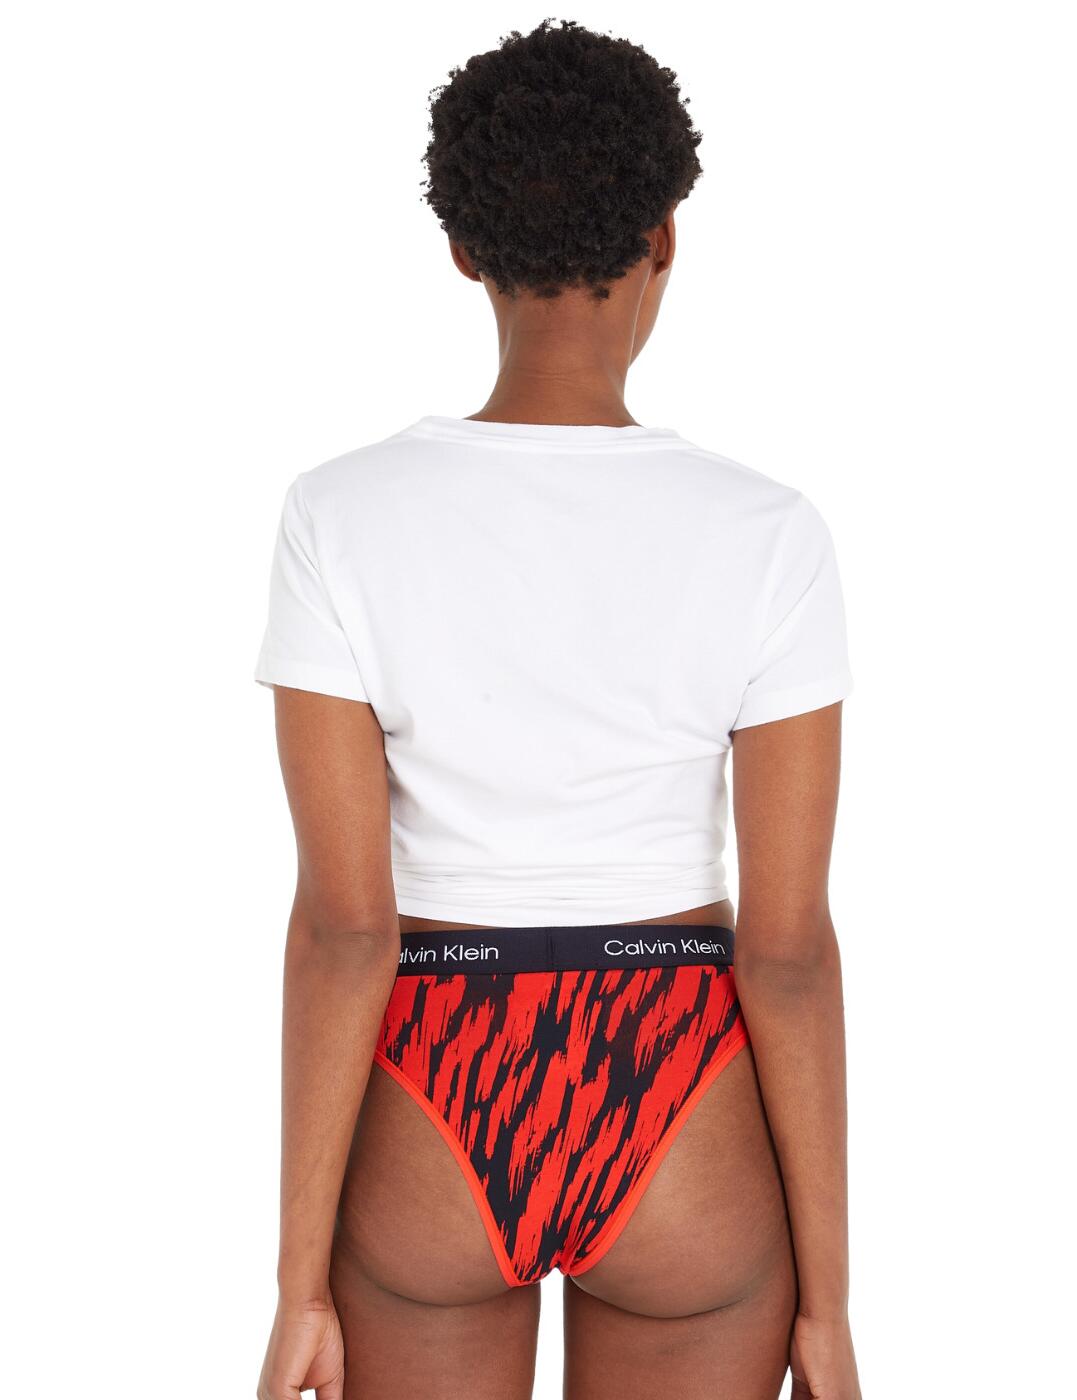 High Waisted Bikini Bottoms - CK96 Calvin Klein®